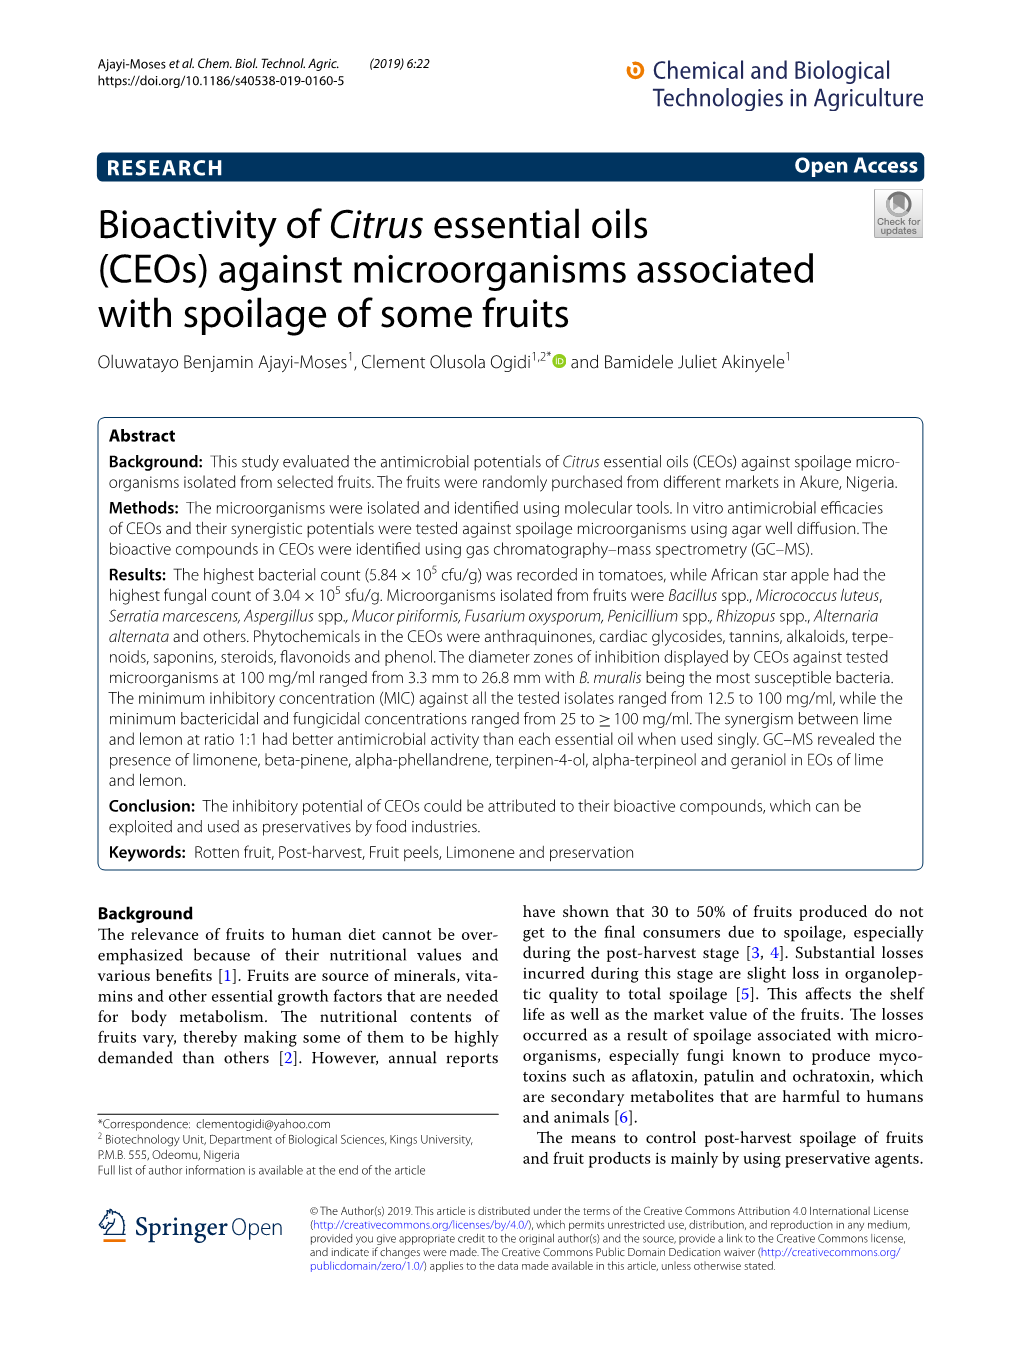 Bioactivity of Citrus Essential Oils (Ceos) Against Microorganisms